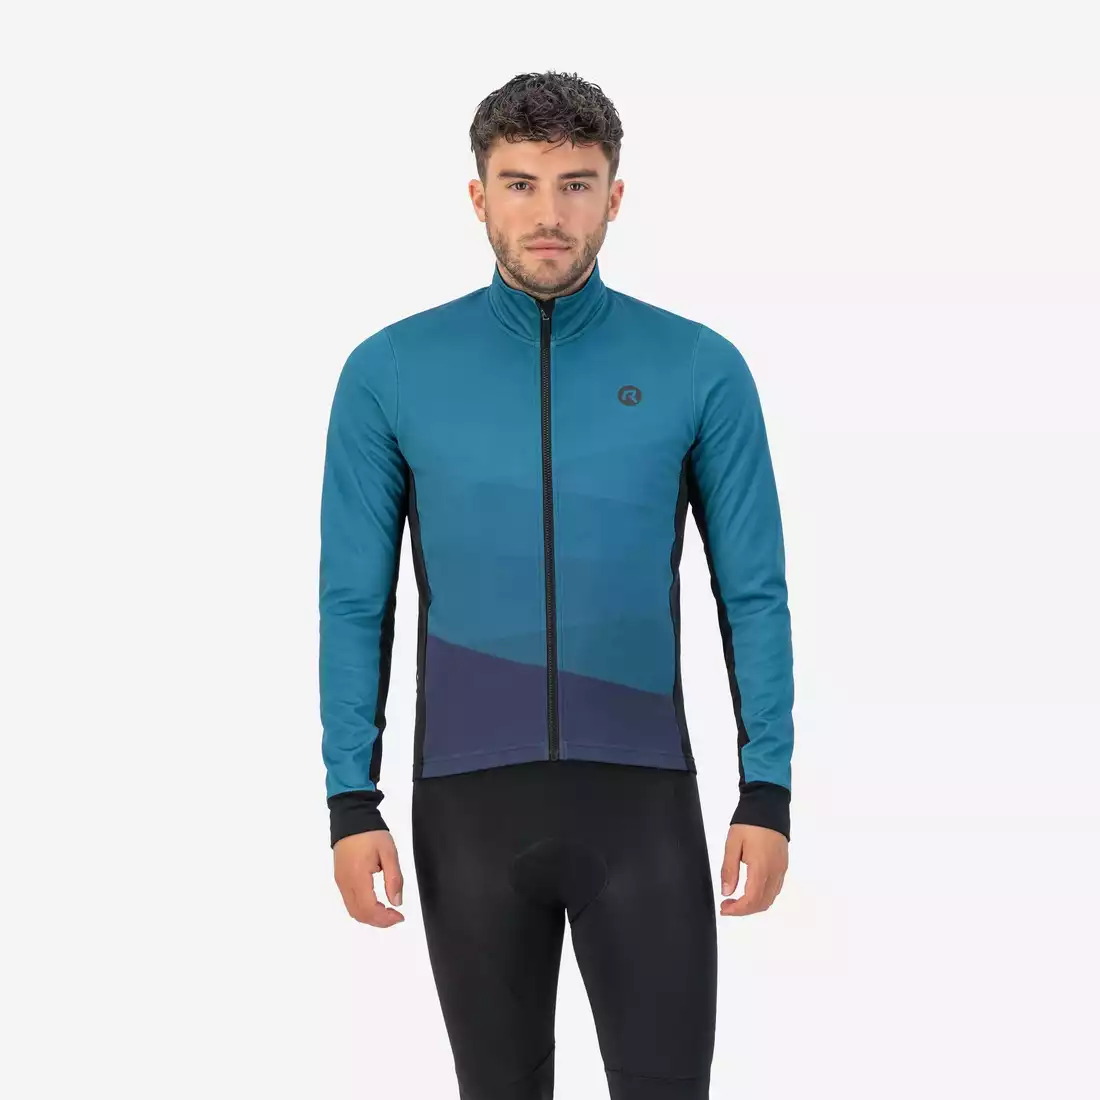 ROGELLI TARAX men's winter cycling jacket blue